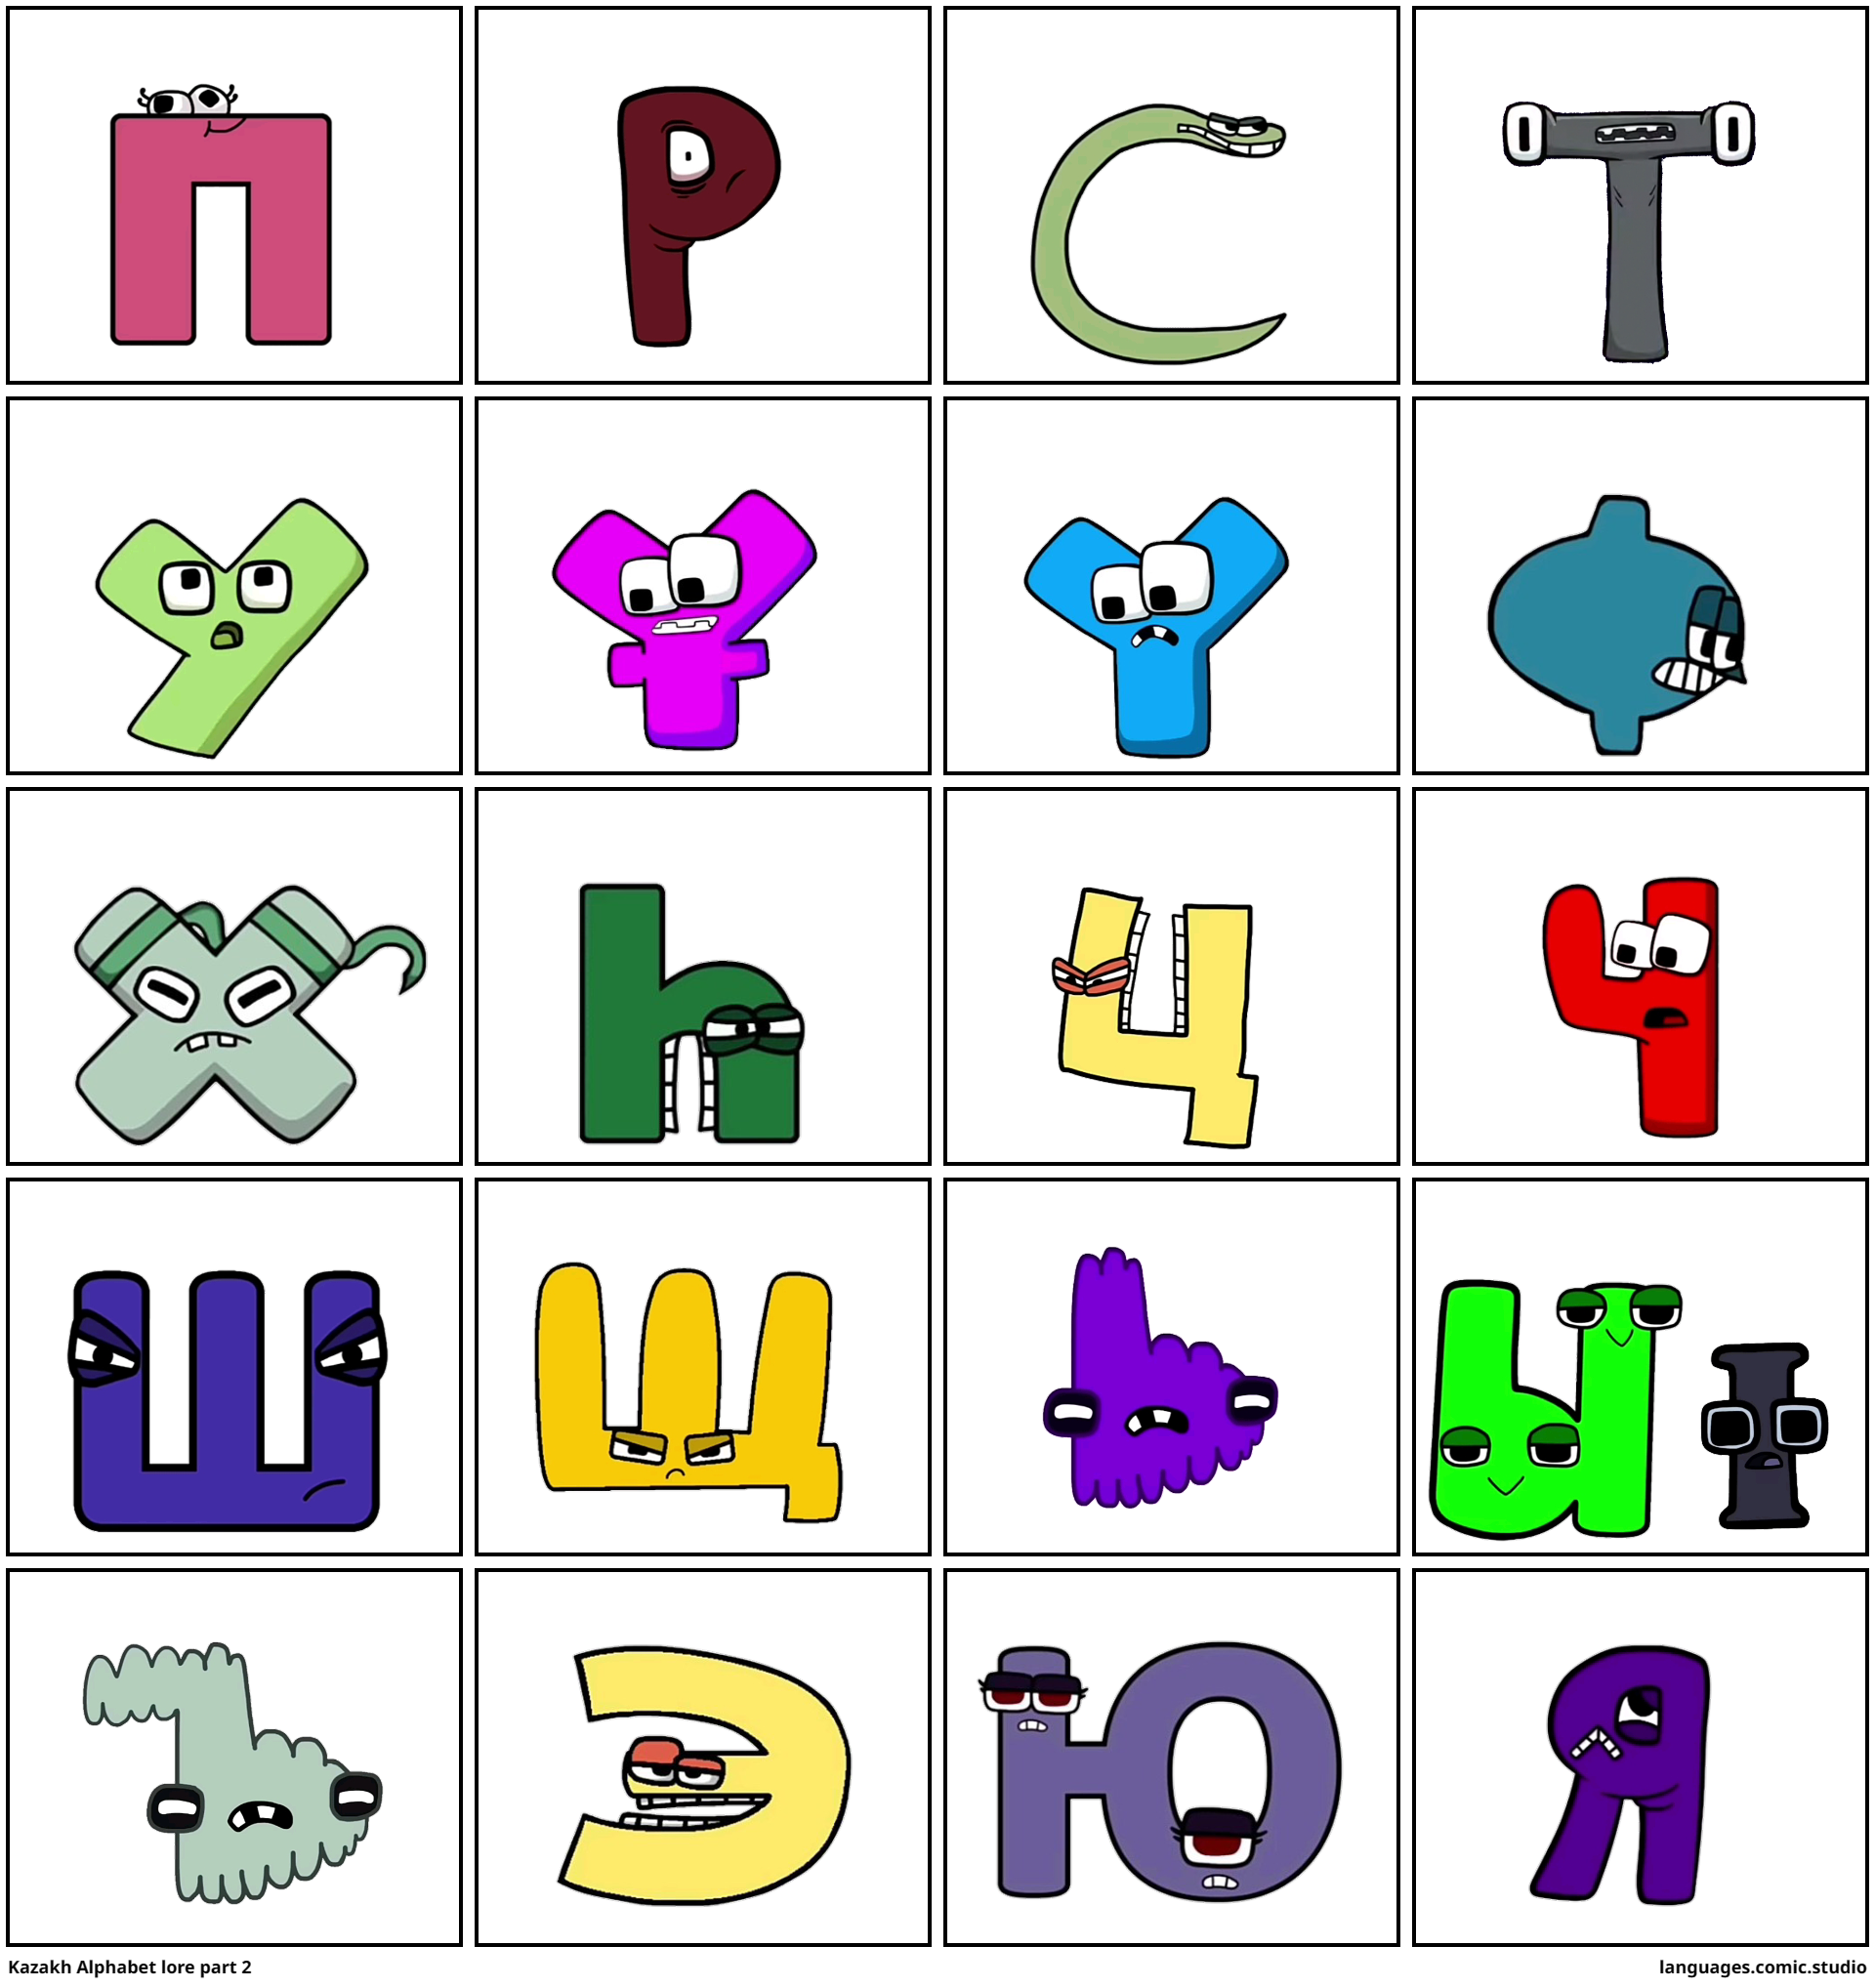 Coptic alphabet lore part 2 - Comic Studio